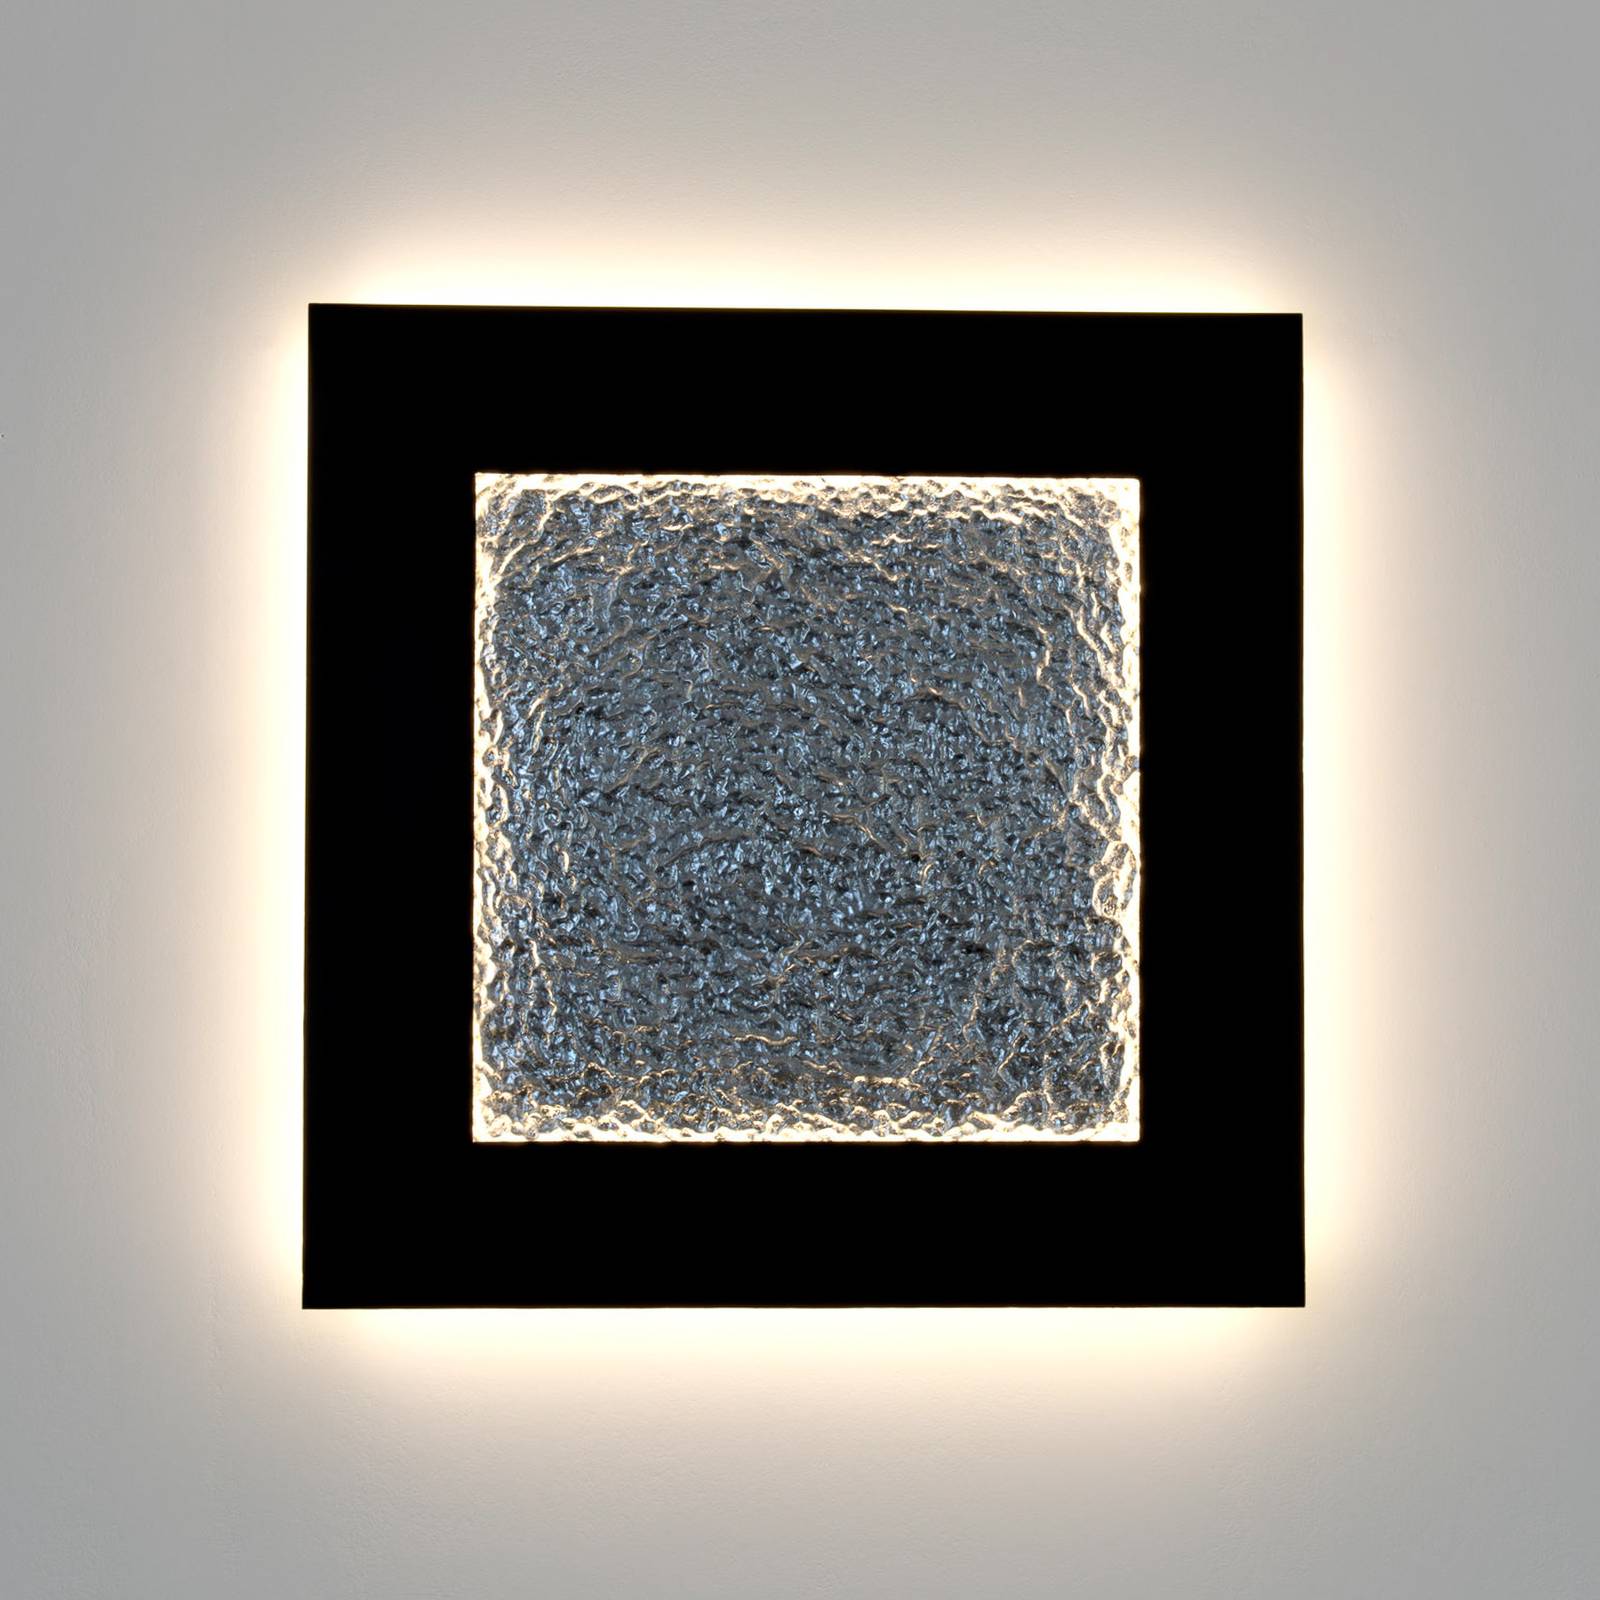 Holländer plenilunio eclipse led-es fali lámpa, barna/ezüst színű, 80 cm-es